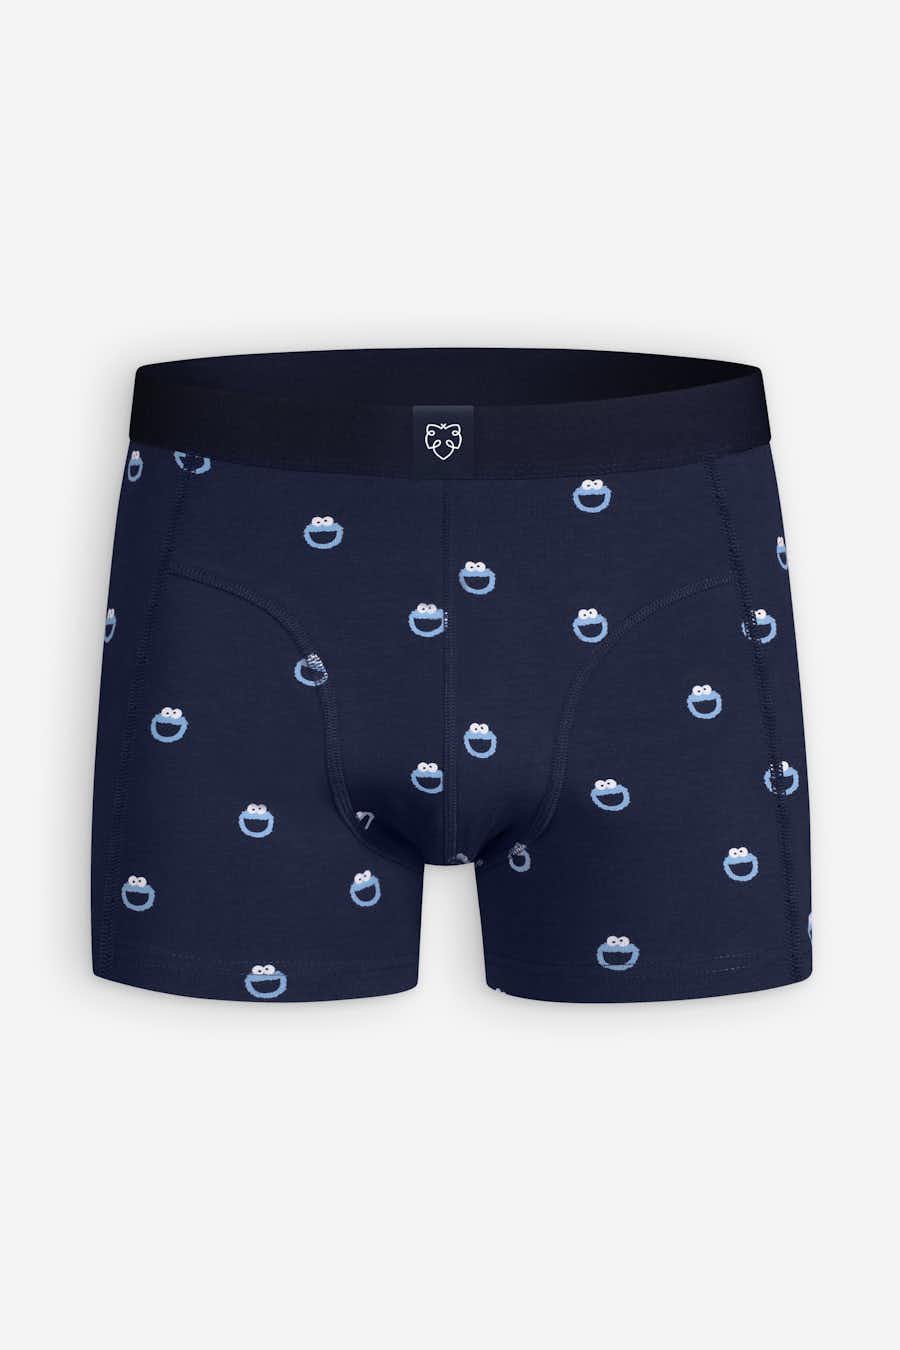 Men's A-Dam Underwear from $15